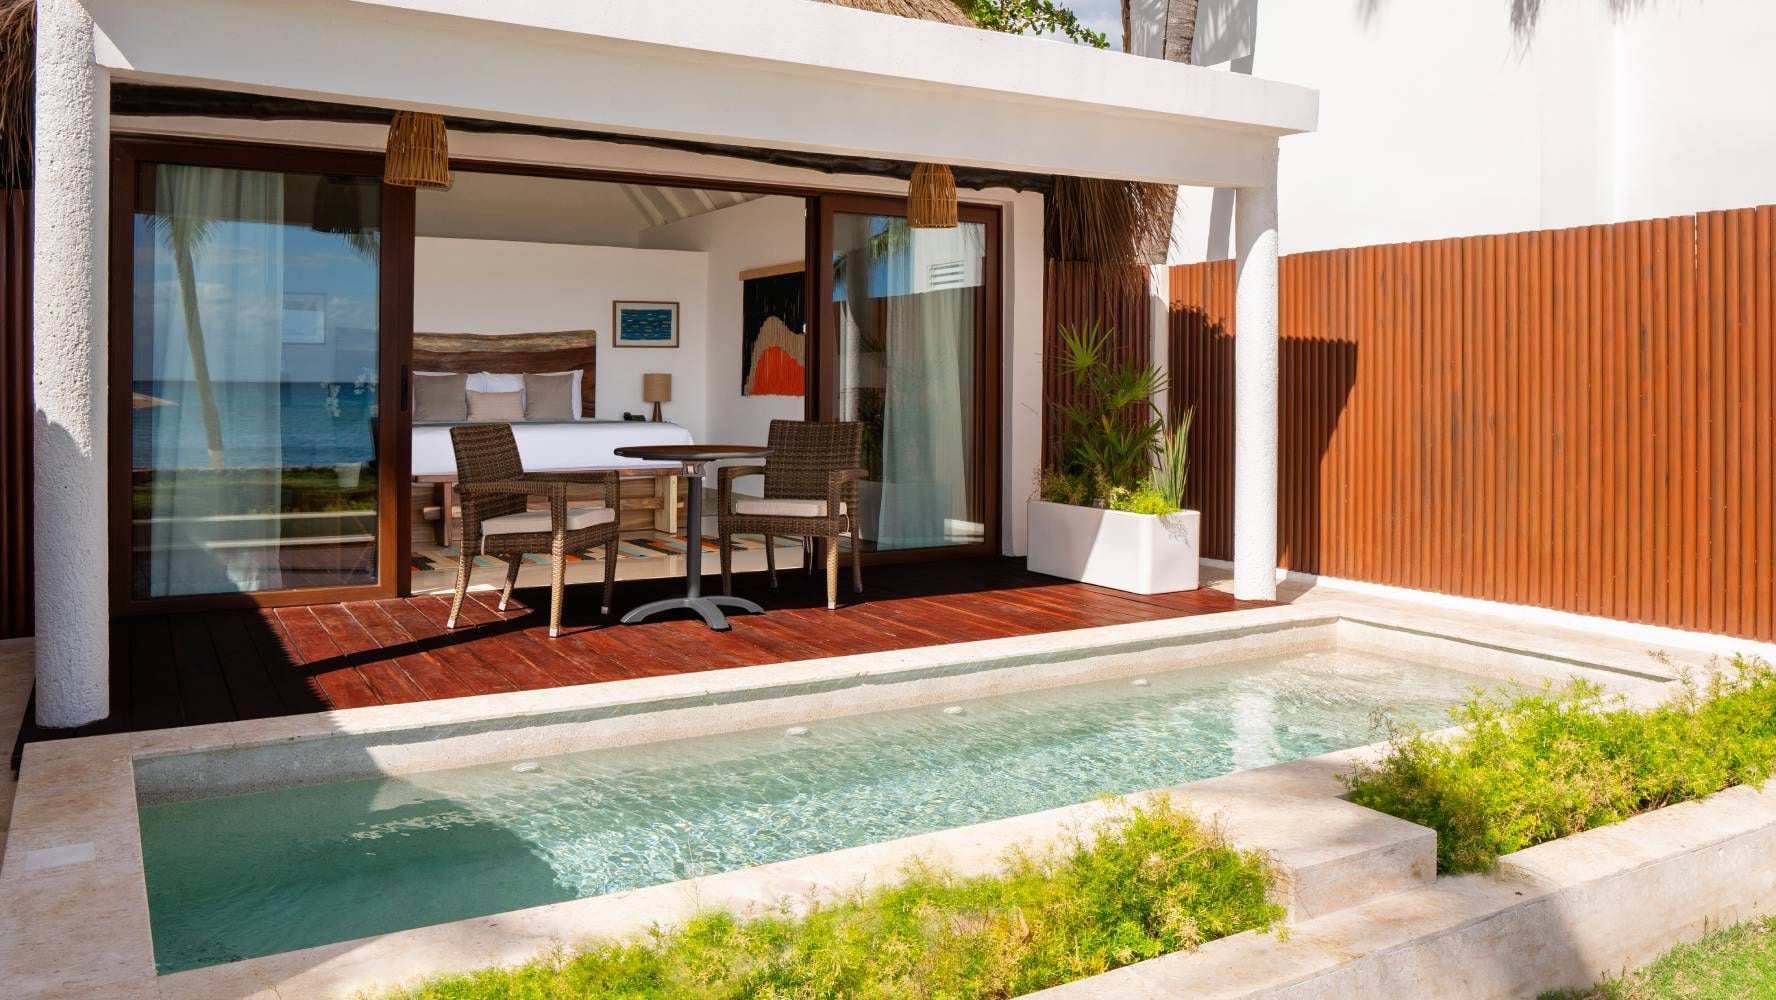 Algunas habitaciones tienen piscina privada. (Foto: Cortesía / The Beachfront by The Fives Hotels).